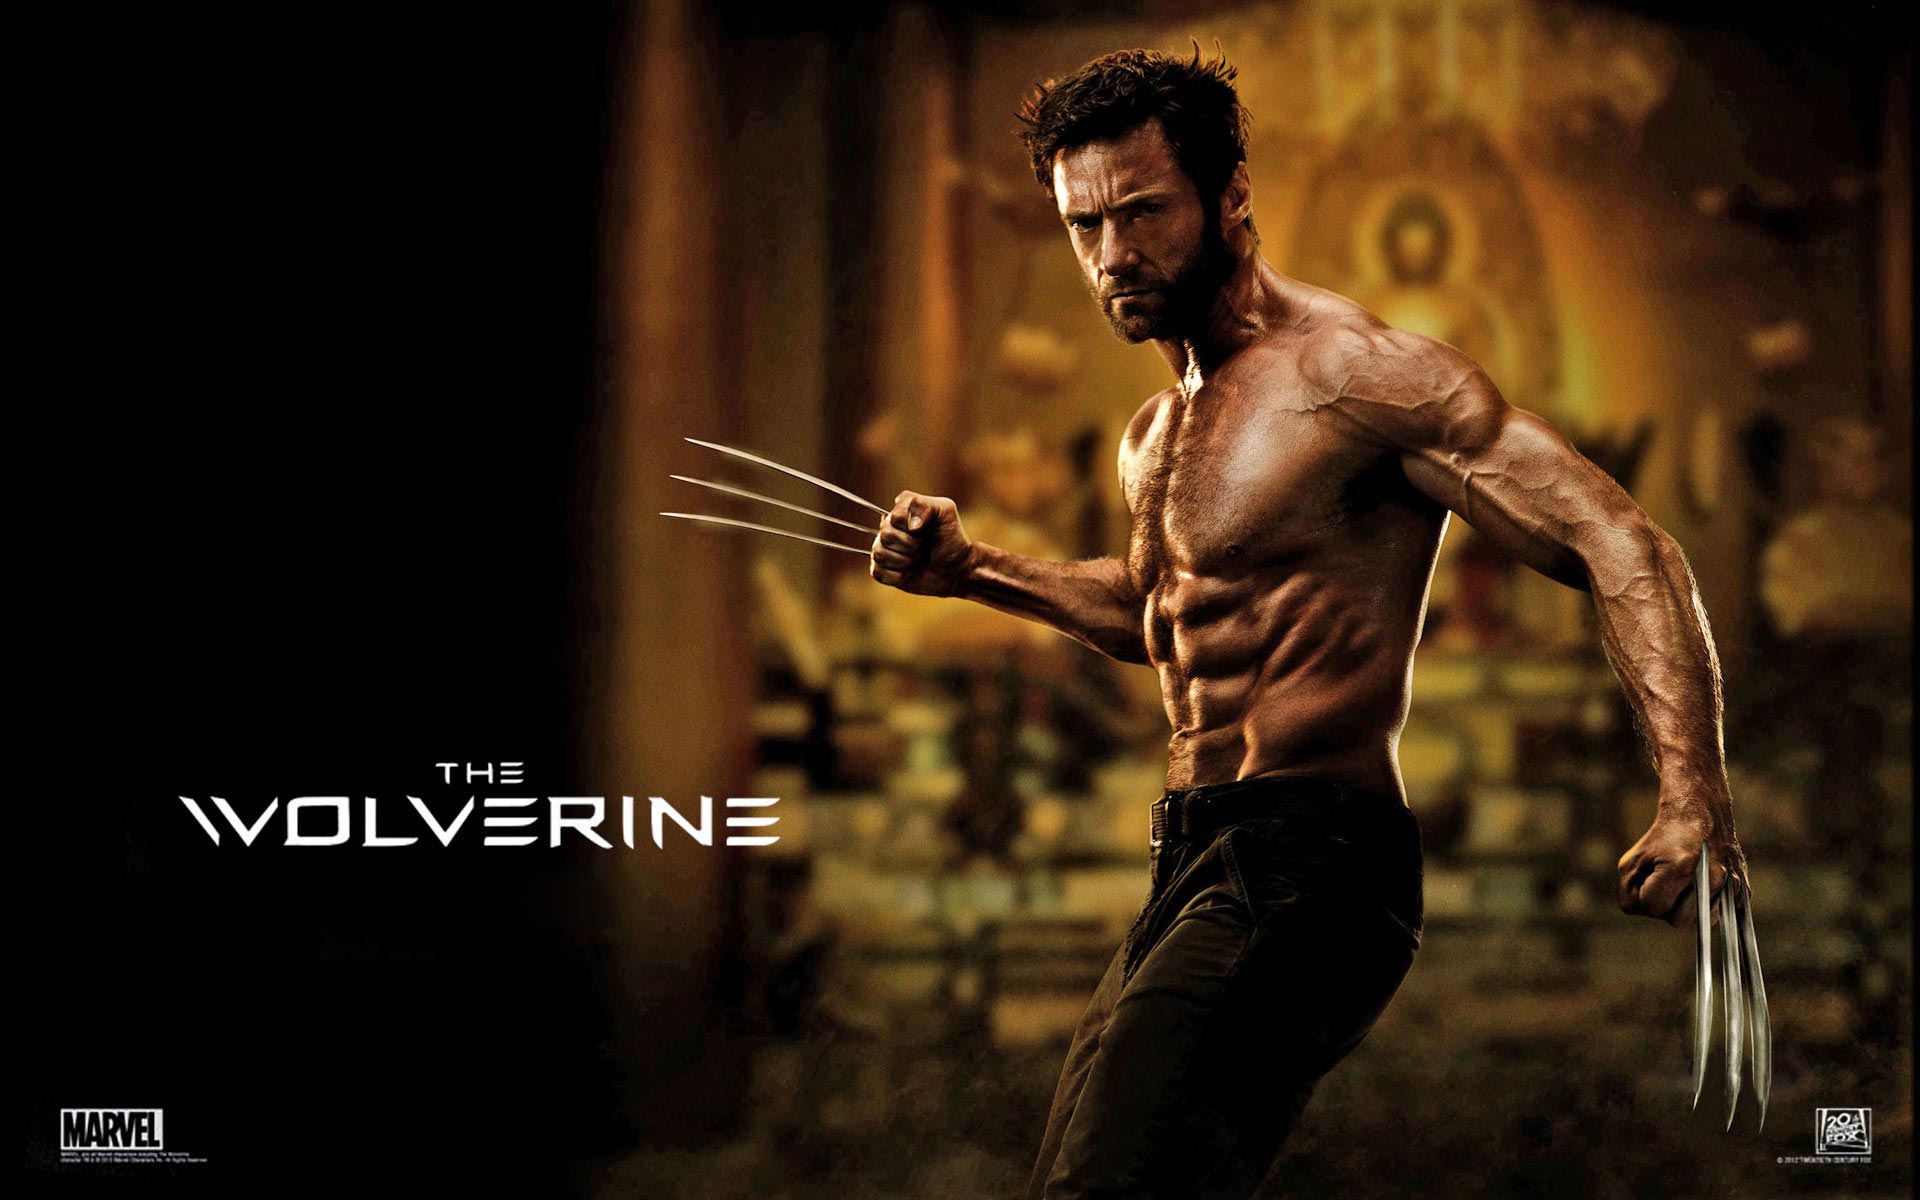 Movie Trailer: The Wolverine